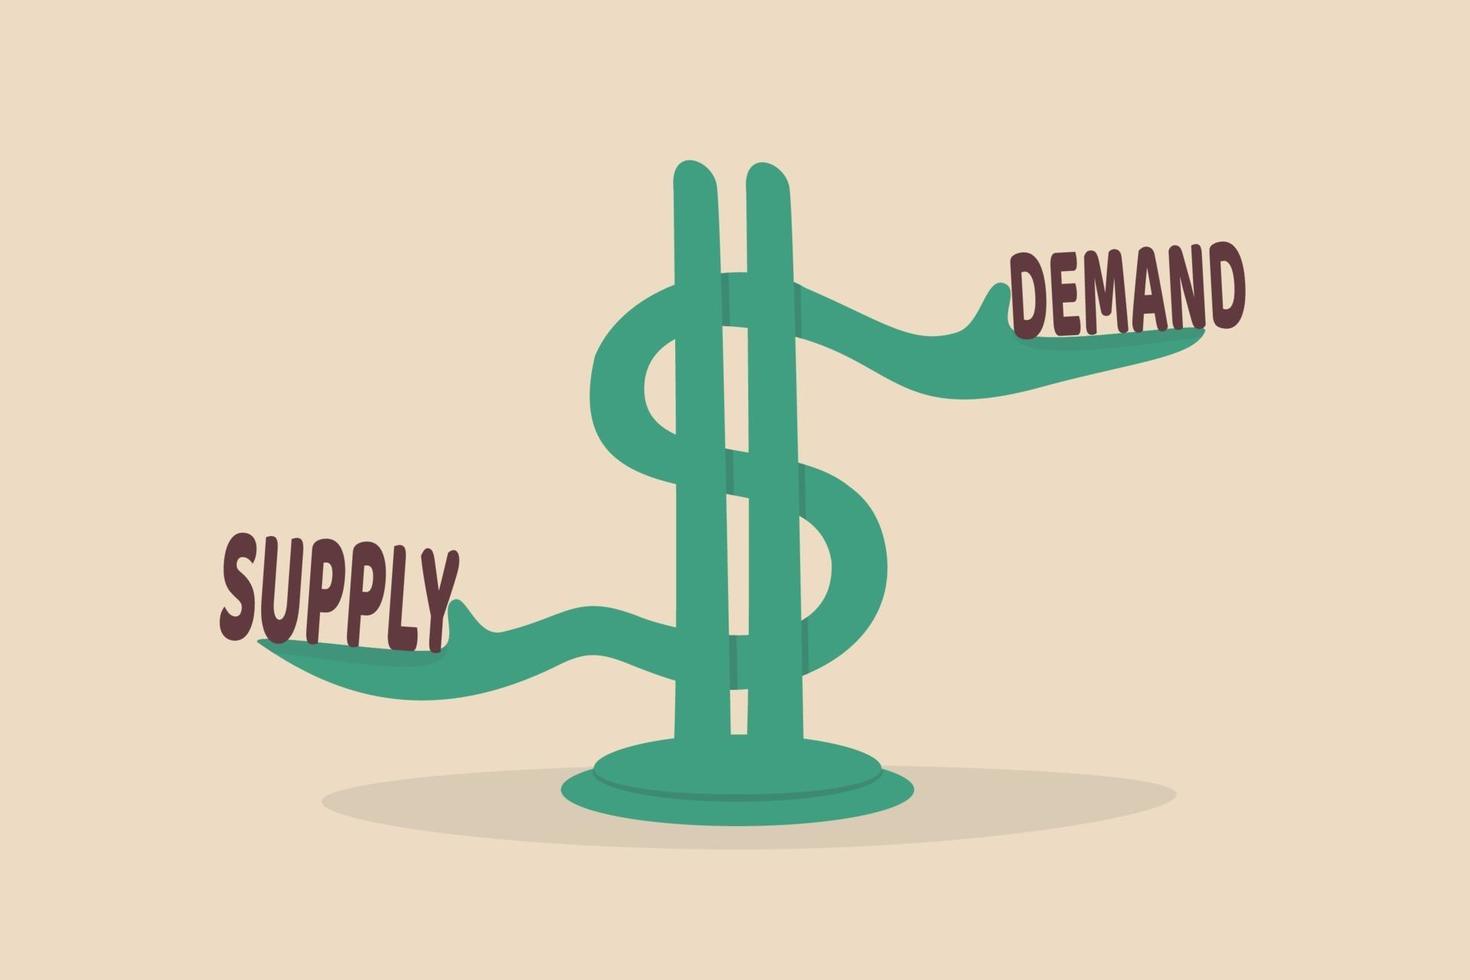 demanda e oferta, modelo econômico de determinação de preços em um conceito de mercado de capitais vetor